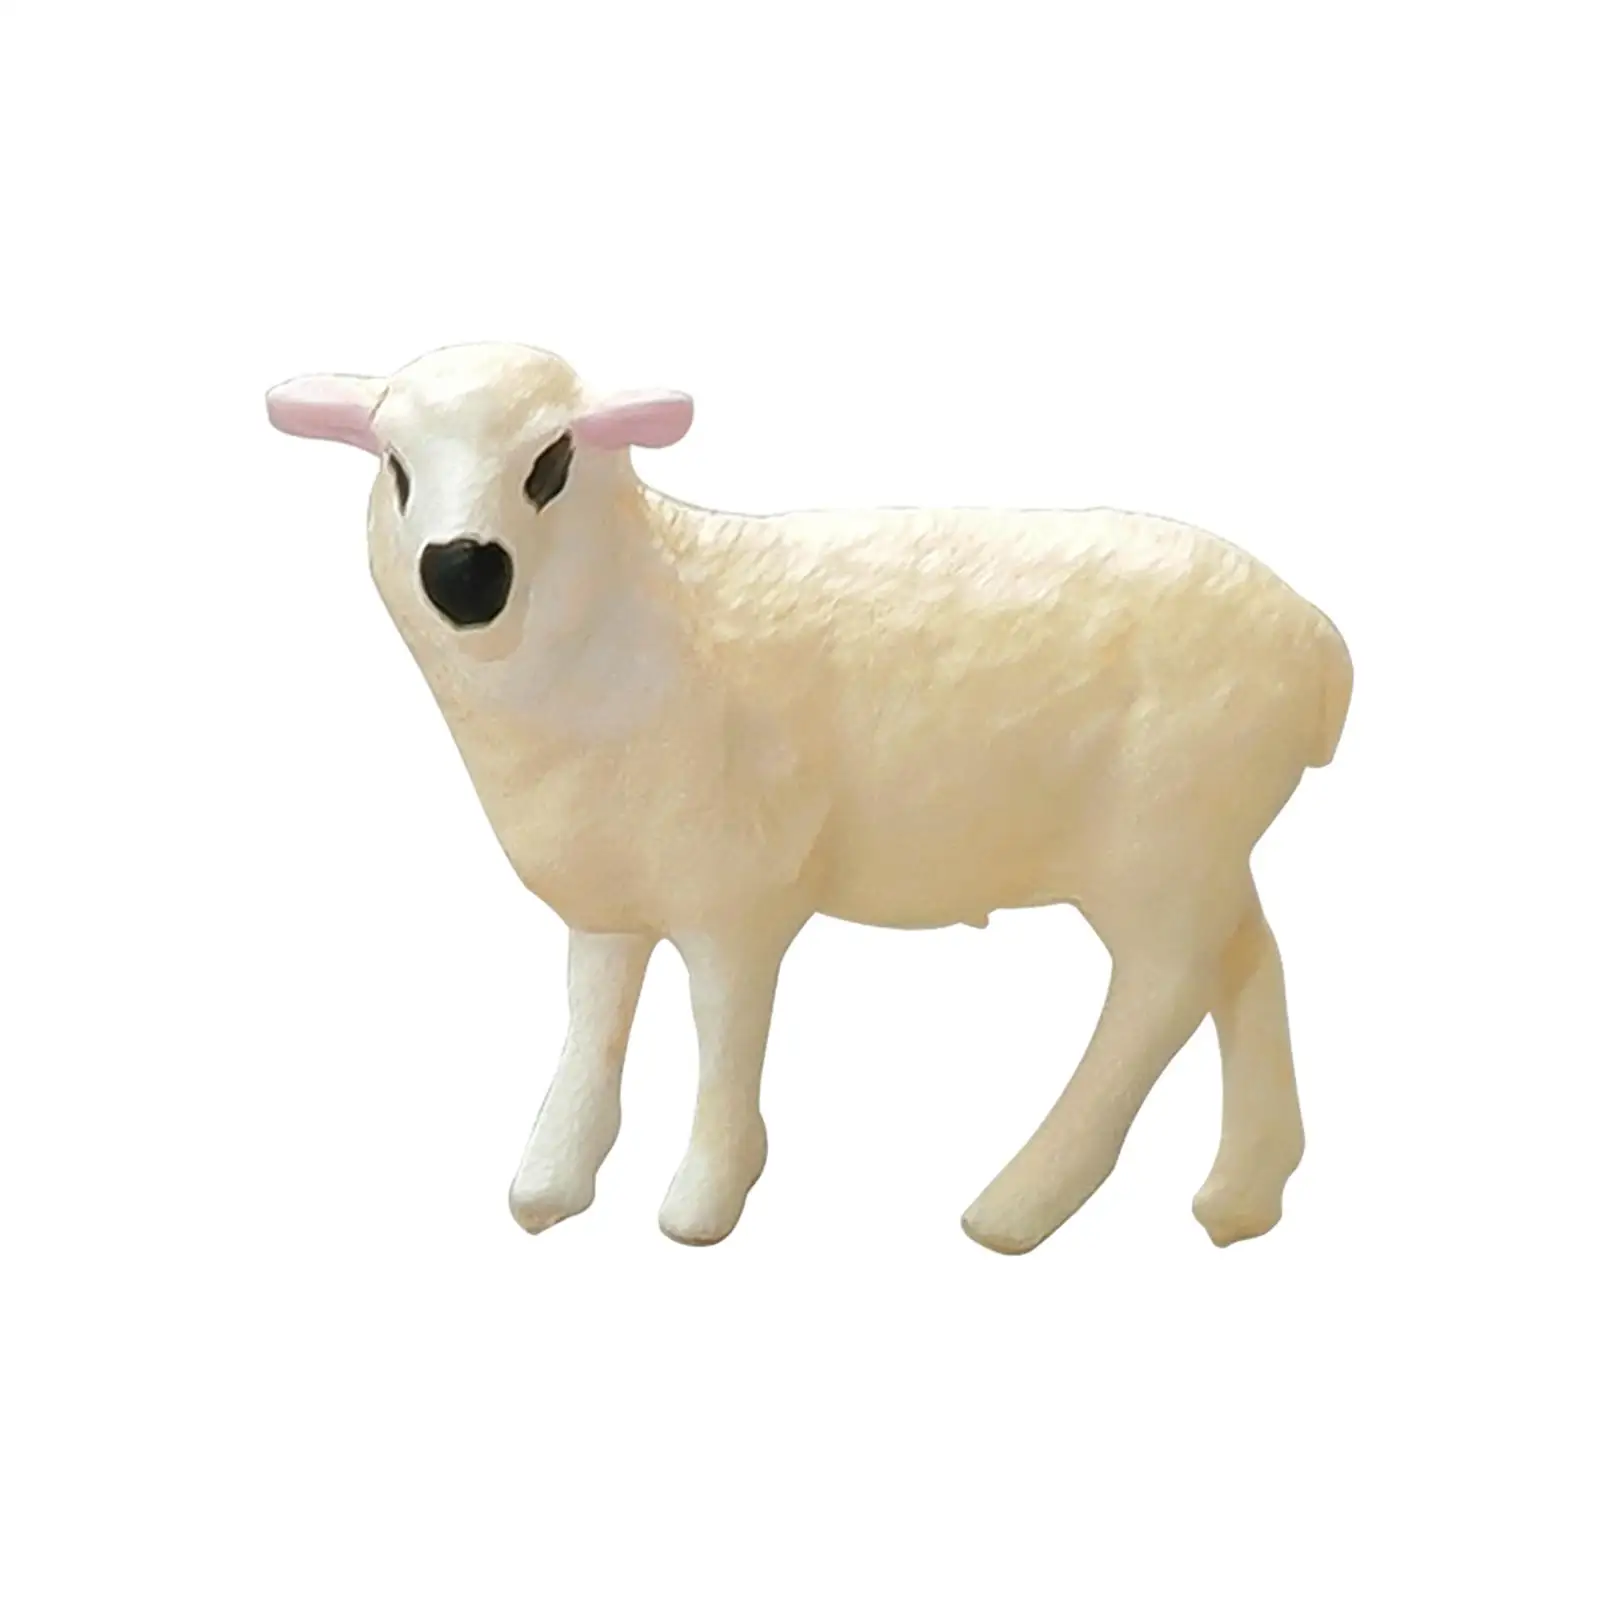 

Реалистичная фигурка овцы, модель 1:64, фигурка животного, реквизит для фото, модель, строительные комплекты, архитектурная модель, миниатюрная компоновка